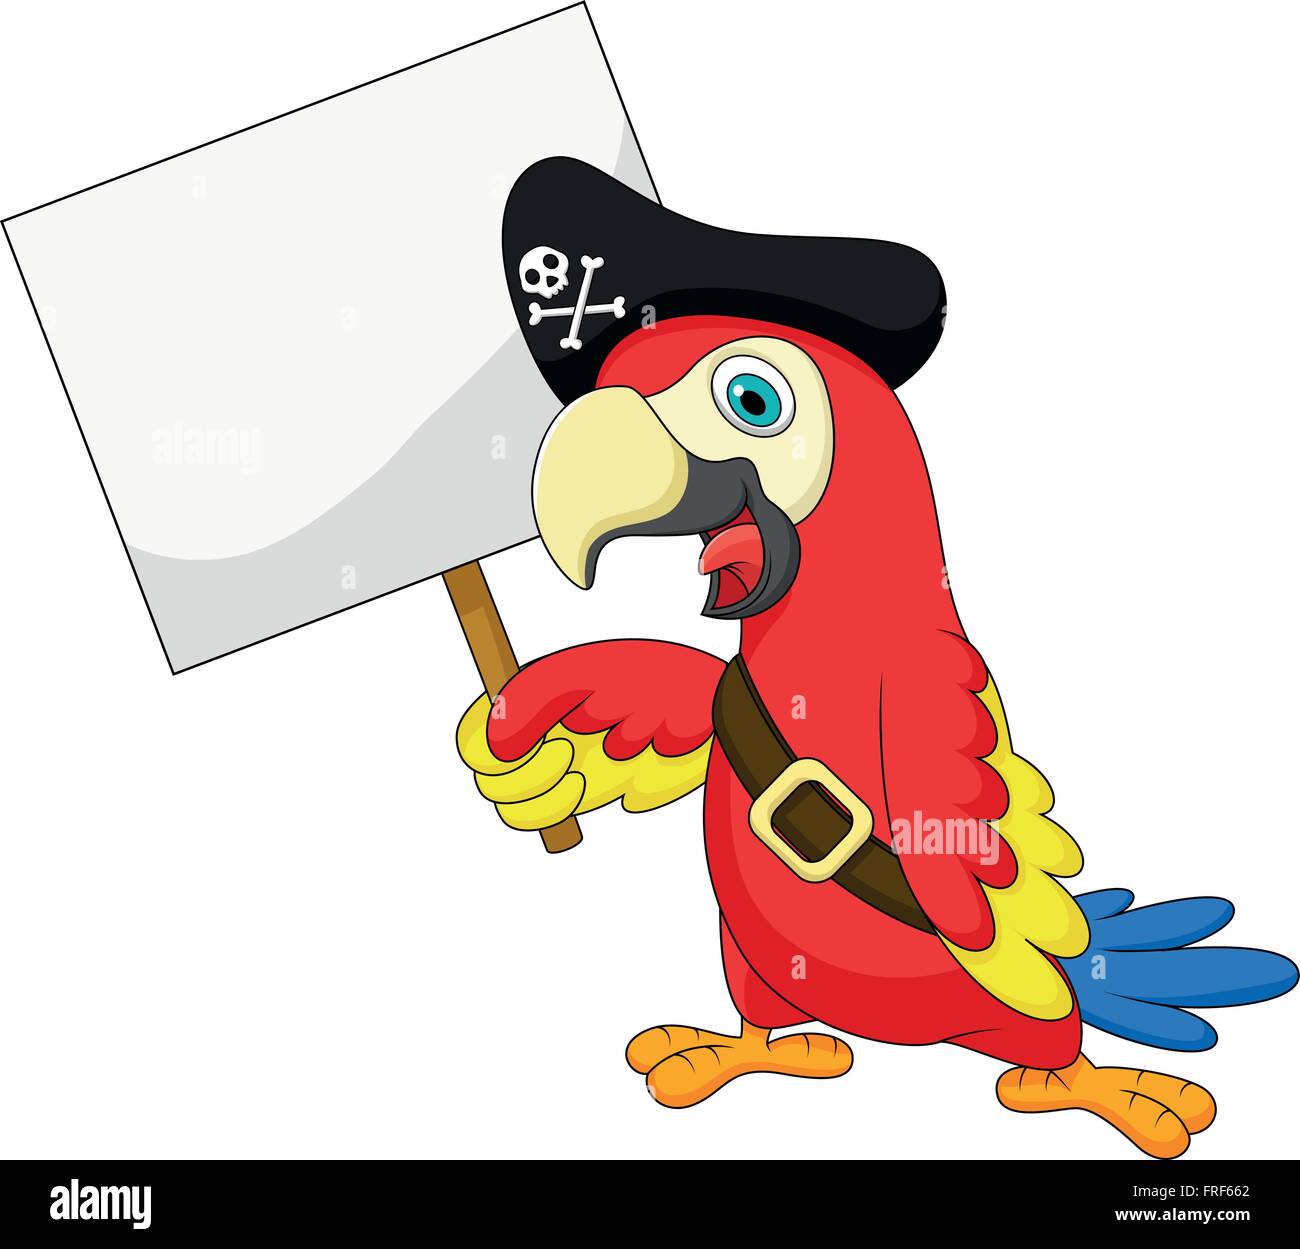 Piraten Papagei cartoon mit leeren Zeichen Stock-Vektorgrafik - Alamy